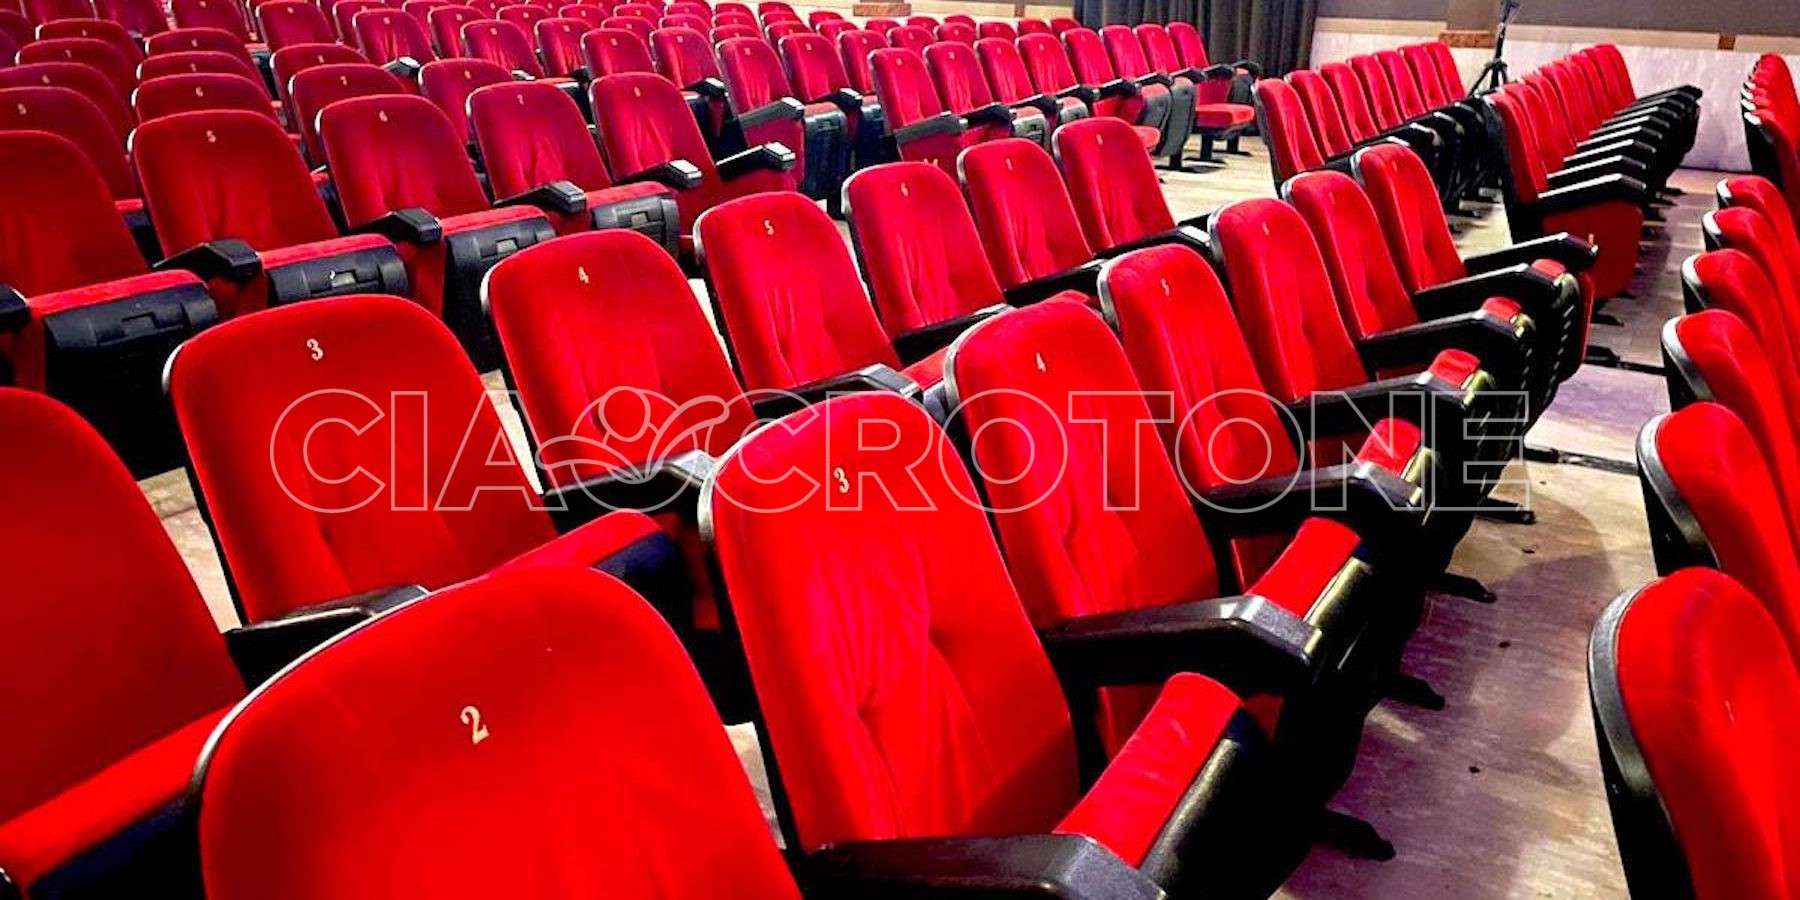 Cinema-Teatro-Apollo-Cinema-Crotone-Poltrone-Redazione-29-12-2022-1200x600